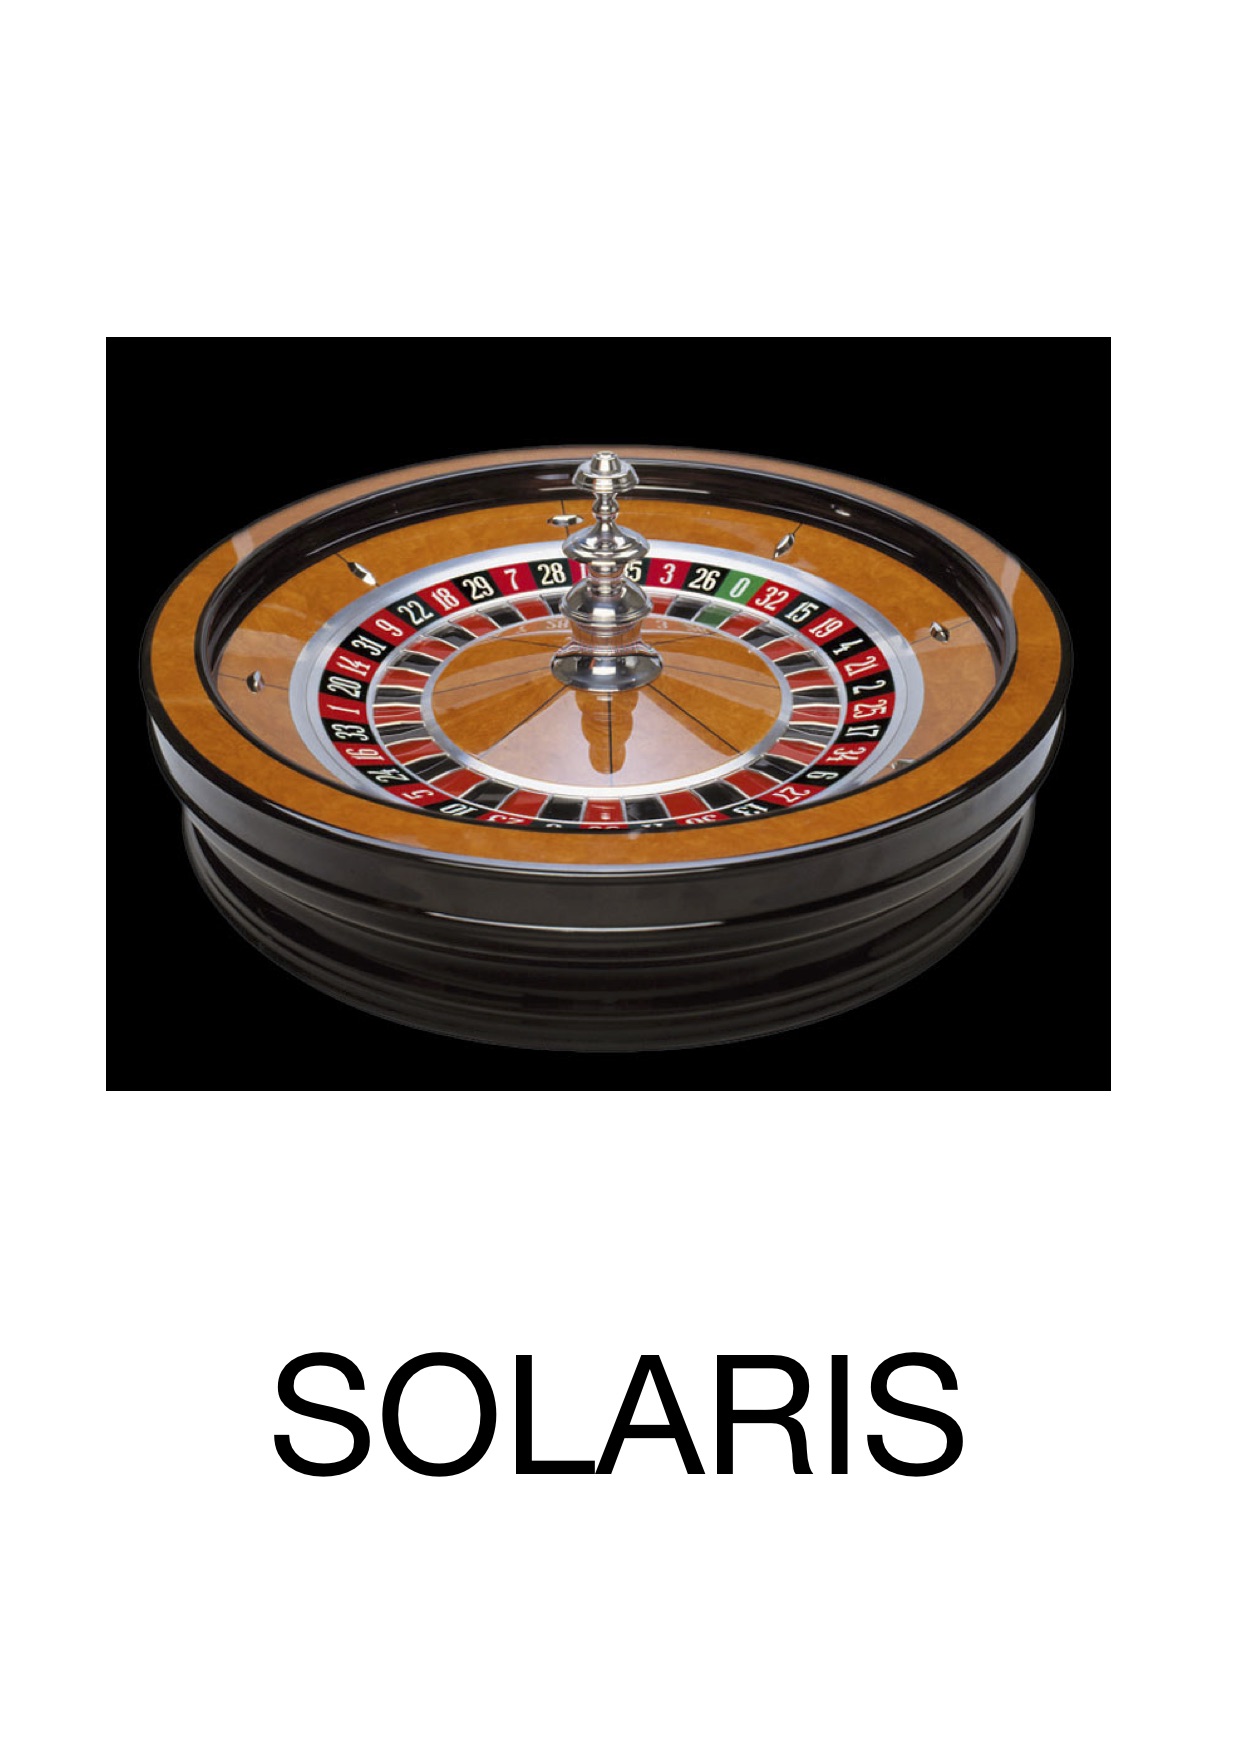 Solaris Wheel